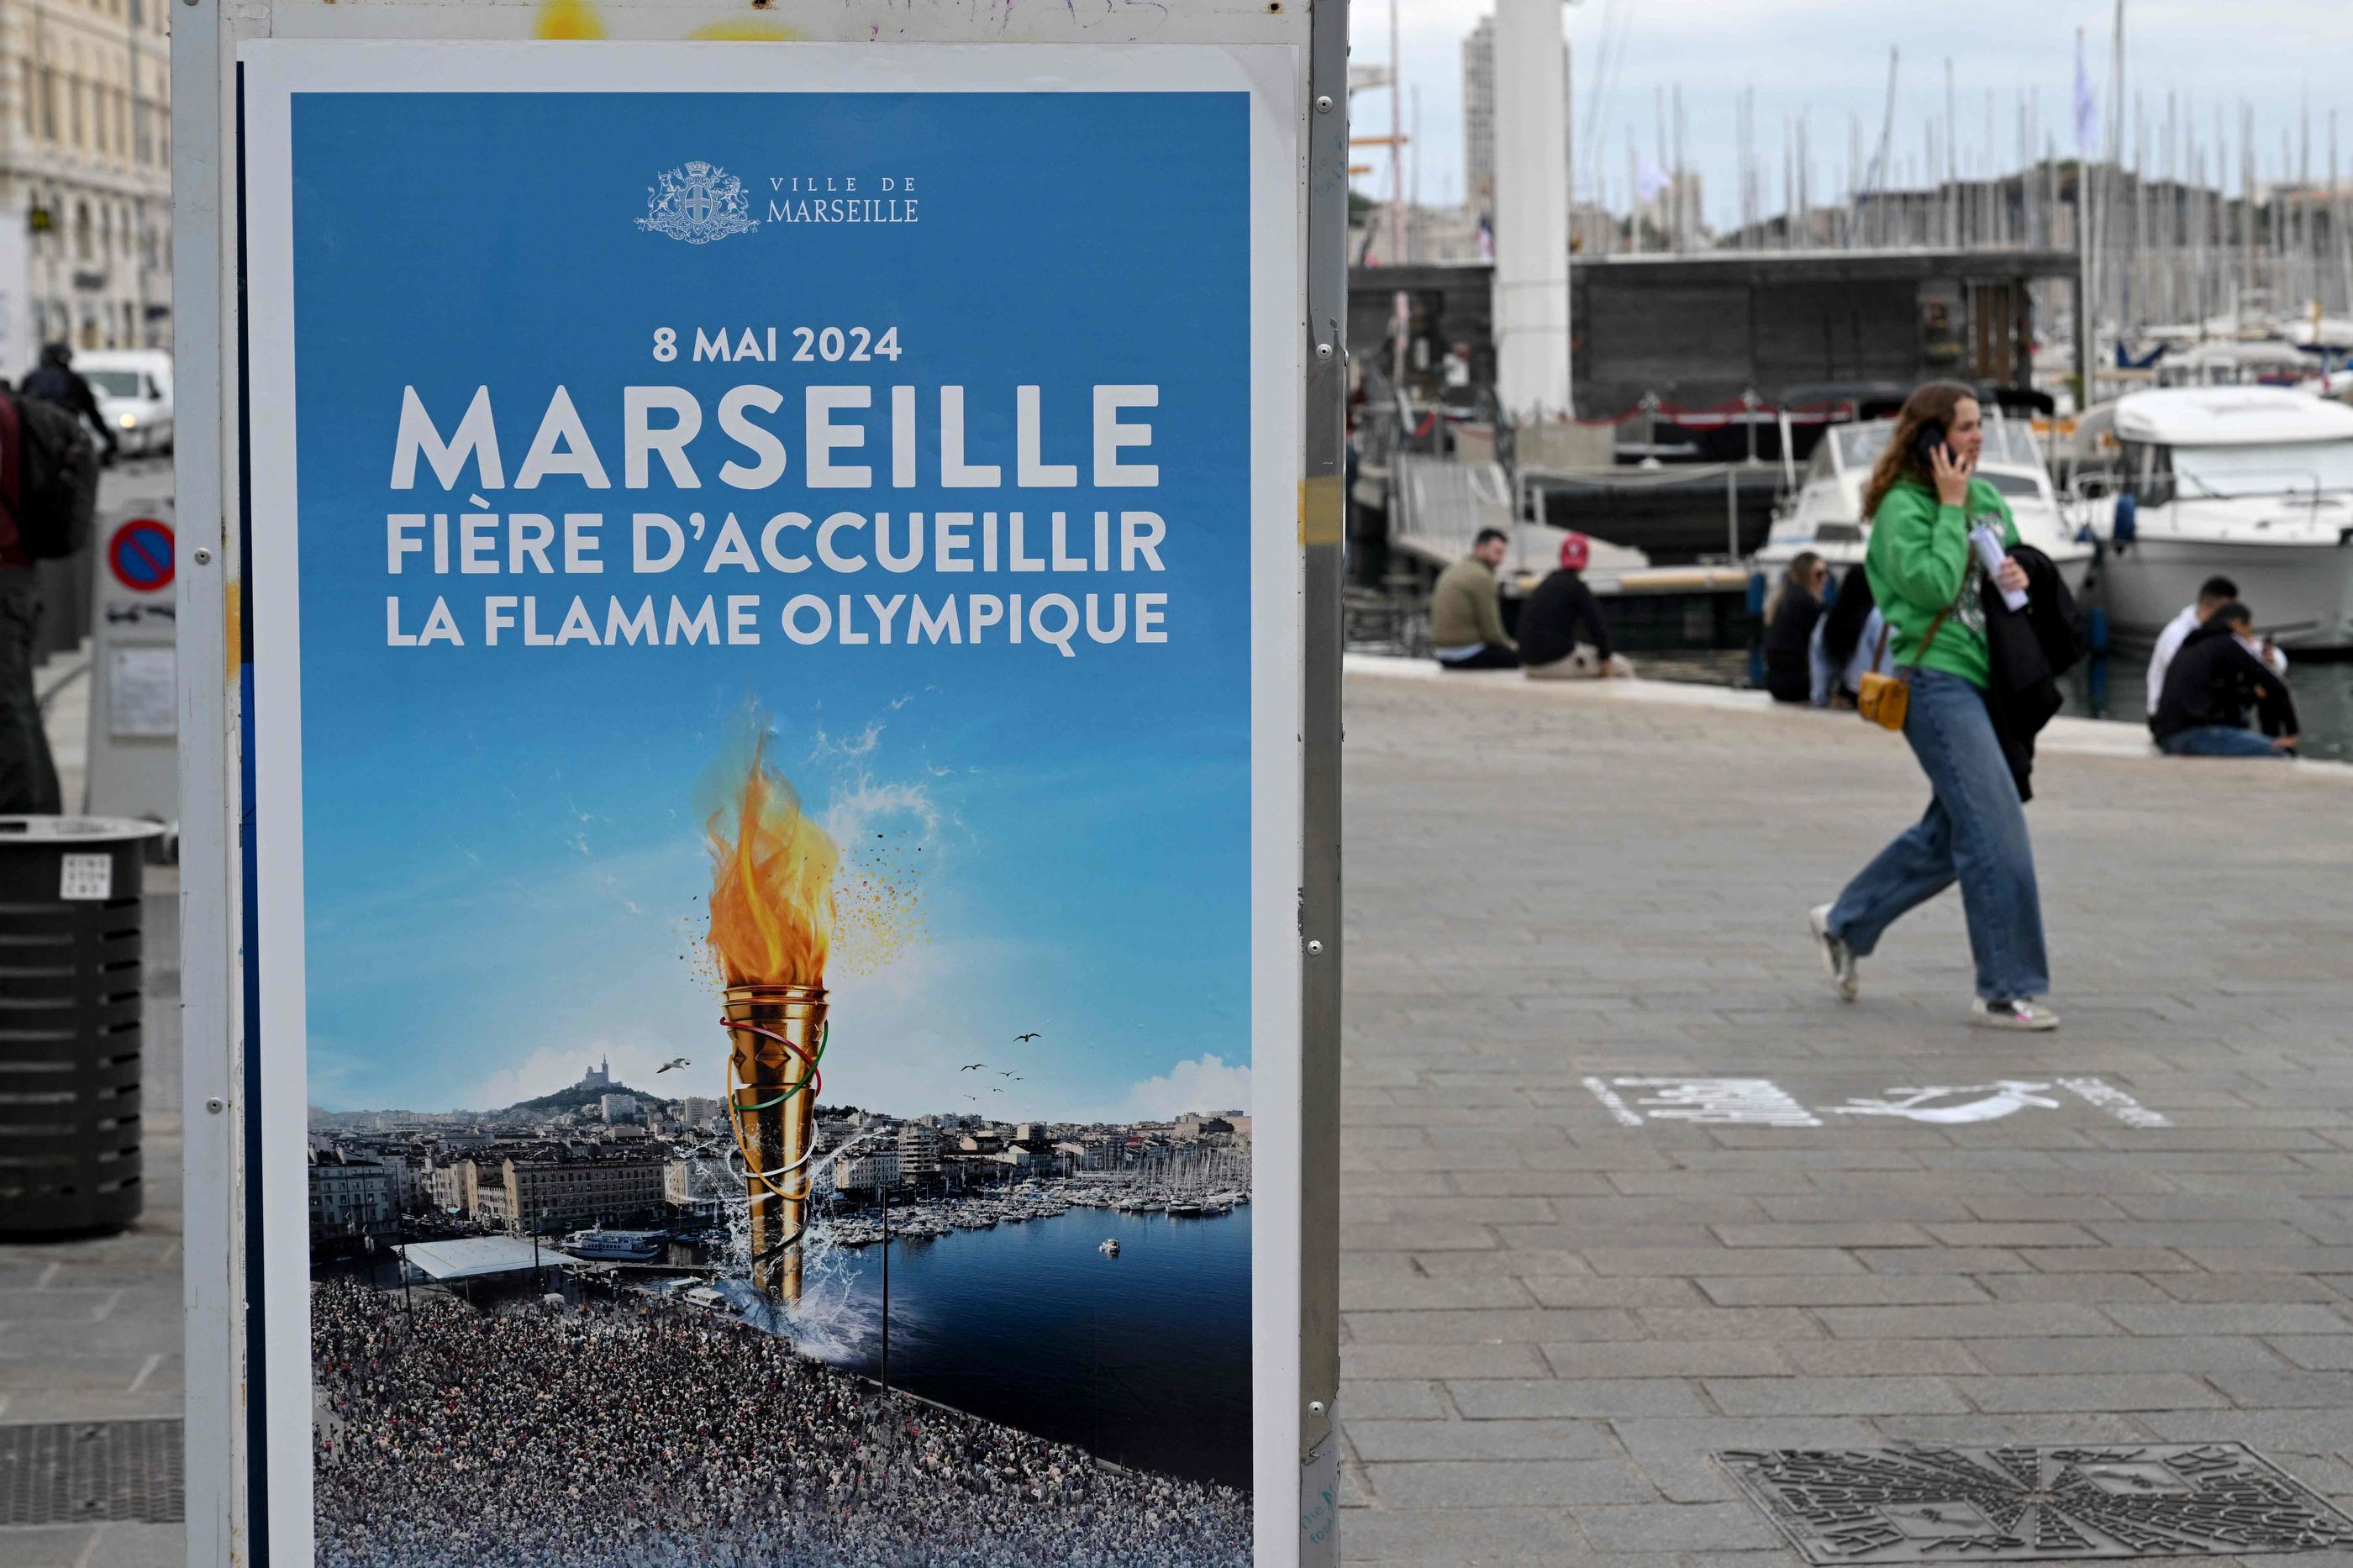 Ce mercredi soir, vers 19 heures, le «Belem» pénétrera dans le Vieux-Port, la flamme olympique à son bord, à l’issue d’une journée nautique exceptionnelle. AFP/Nicolas Tucat